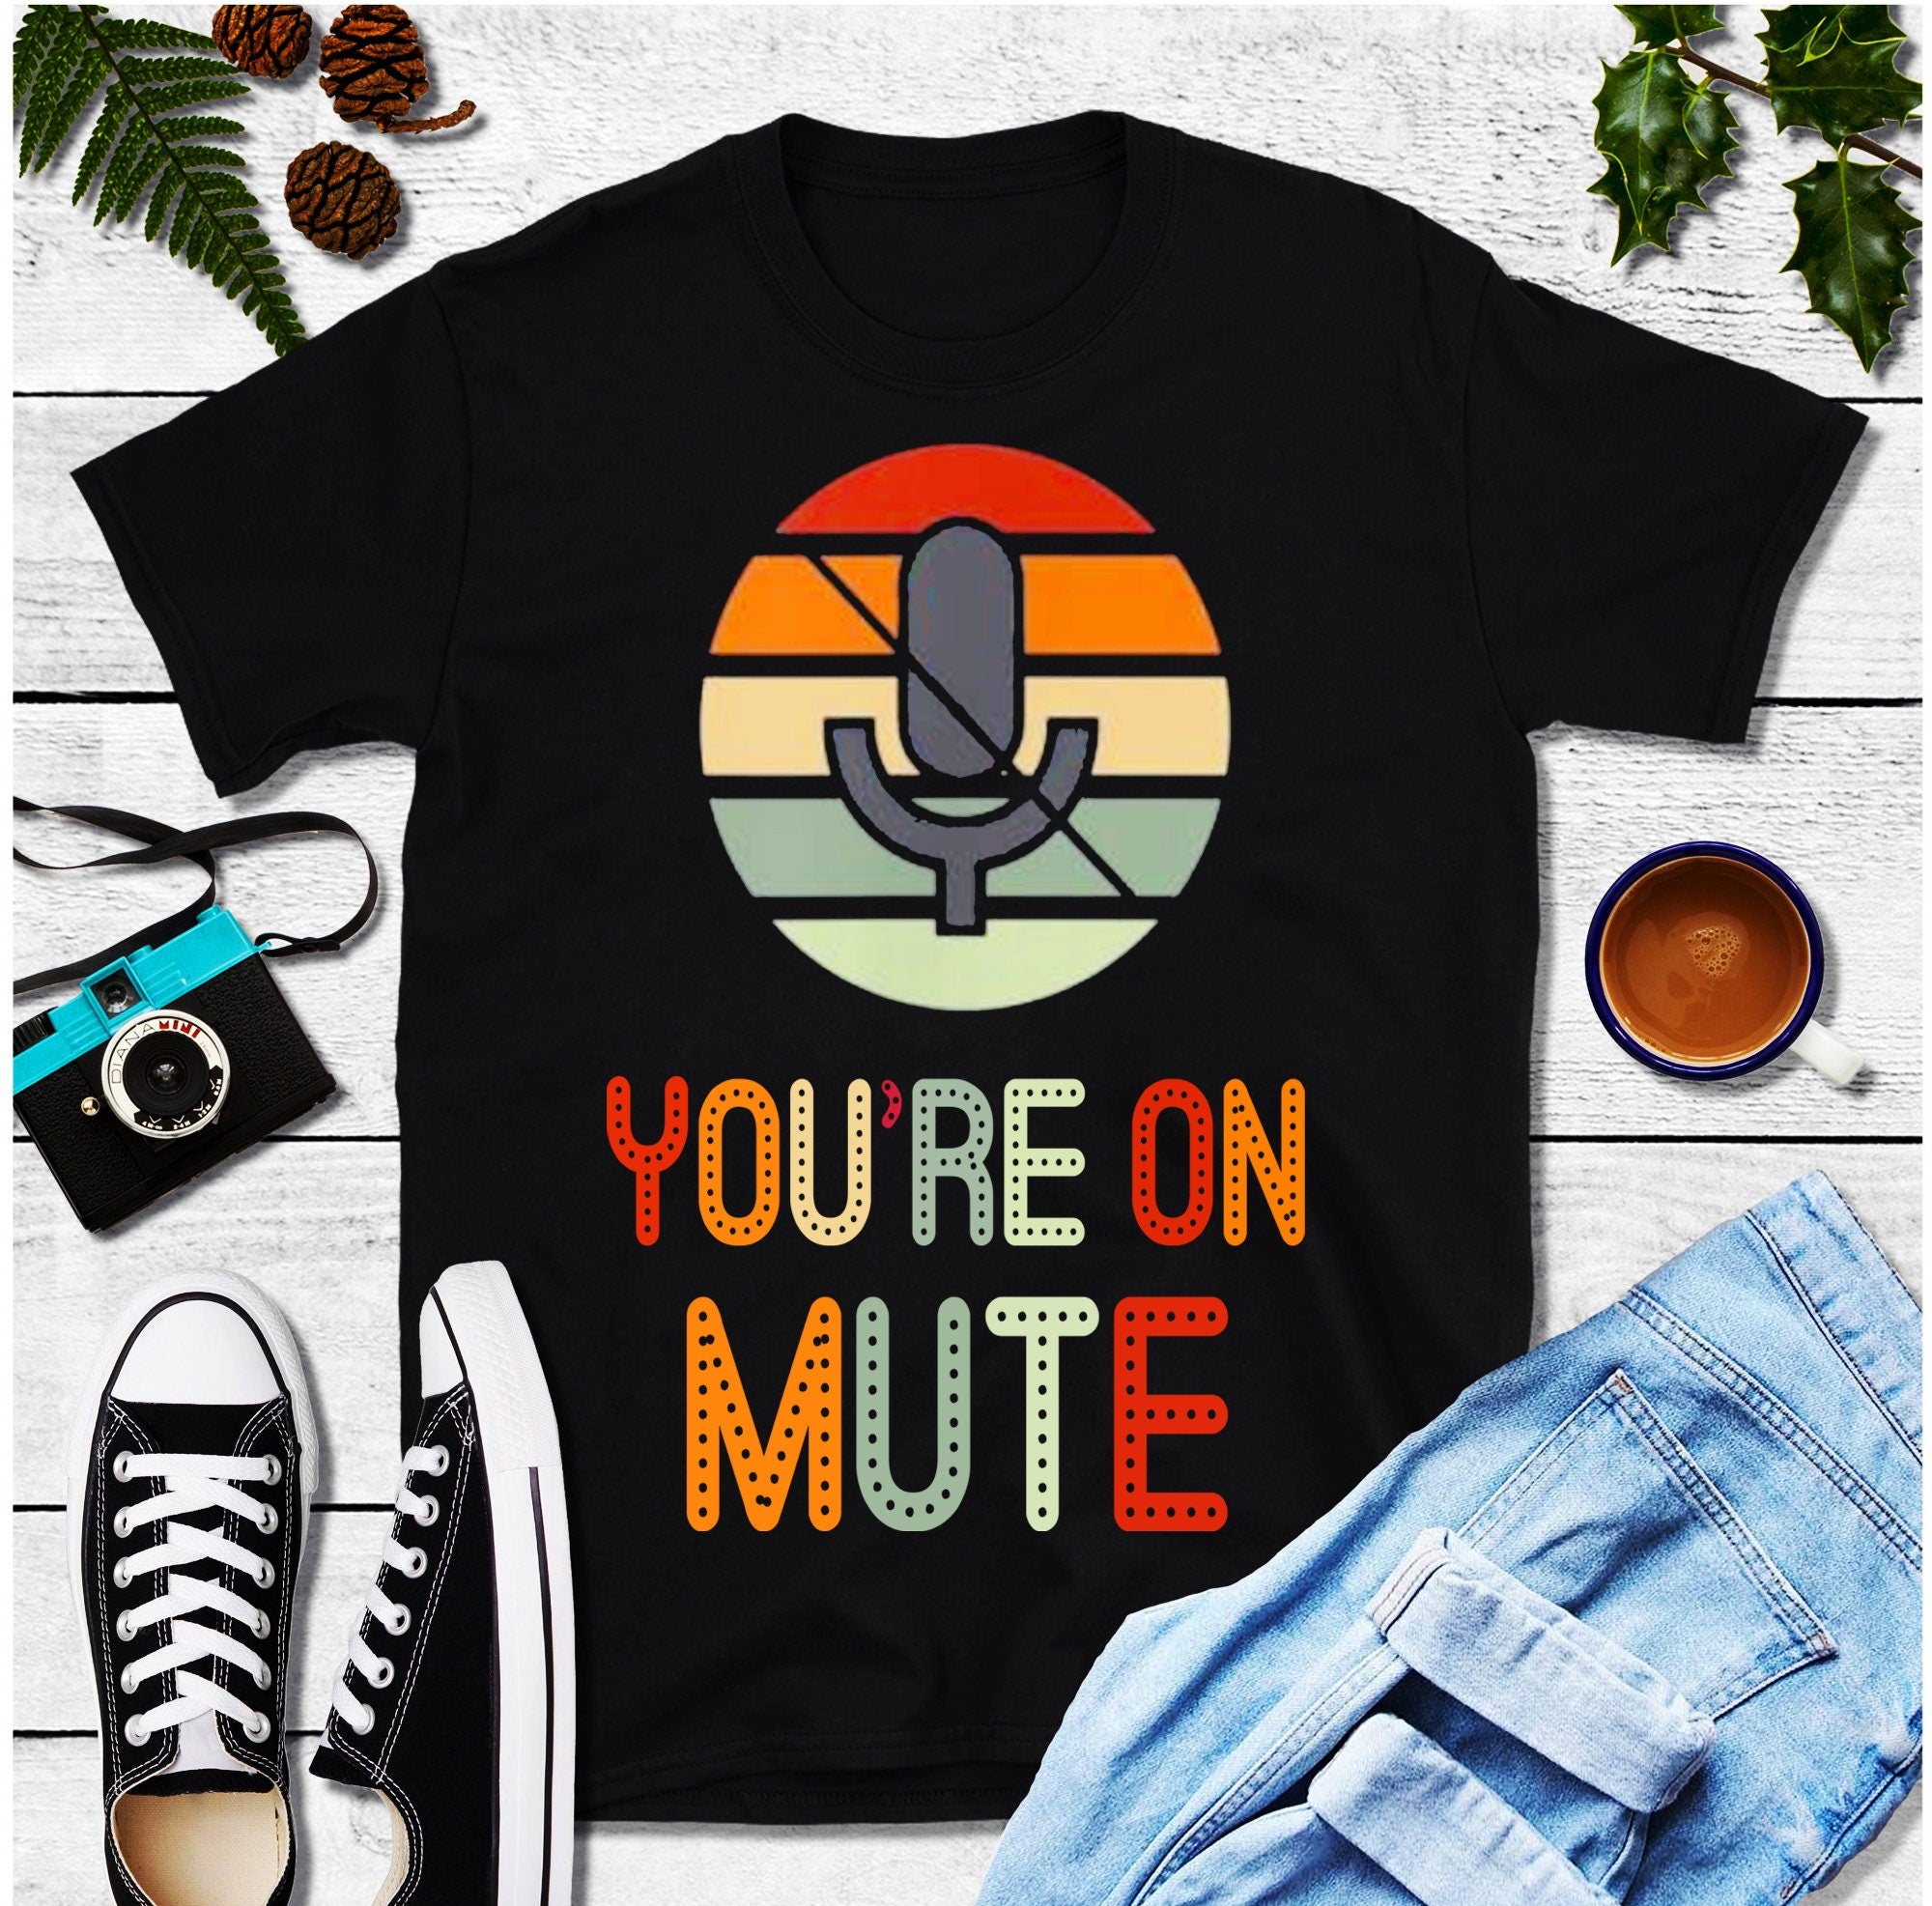 Футболки «You’re On Mute», винтажная ретро-футболка «You’re Mute», рубашка для видеозвонка, рубашка для работы на дому, забавная рубашка, рубашка для конференц-связи — plusminusco.com